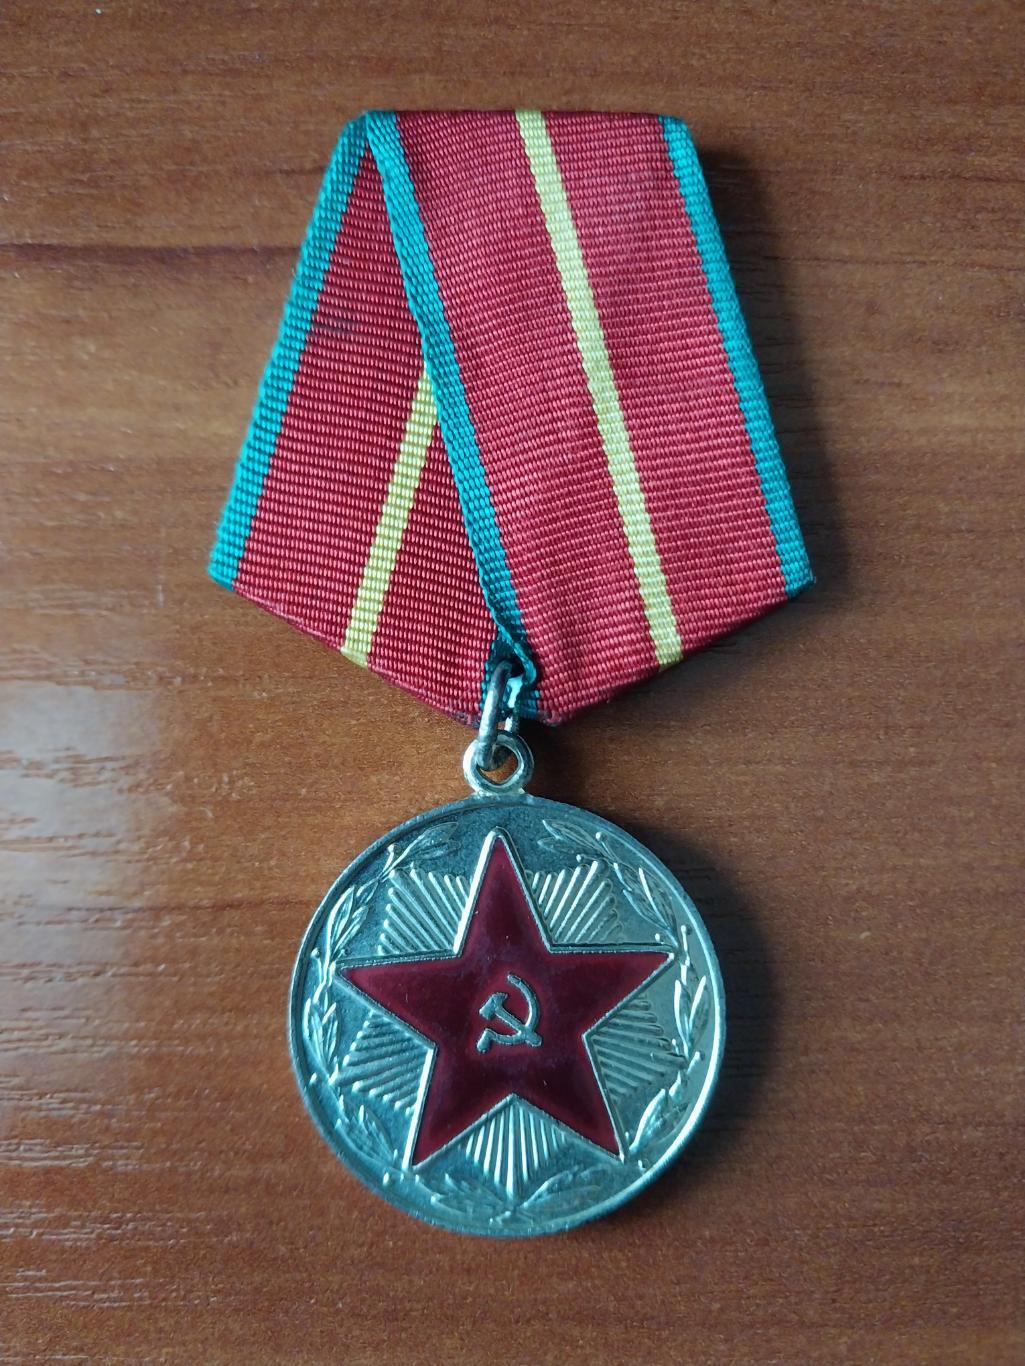 Медаль за 20 лет безупречной службы